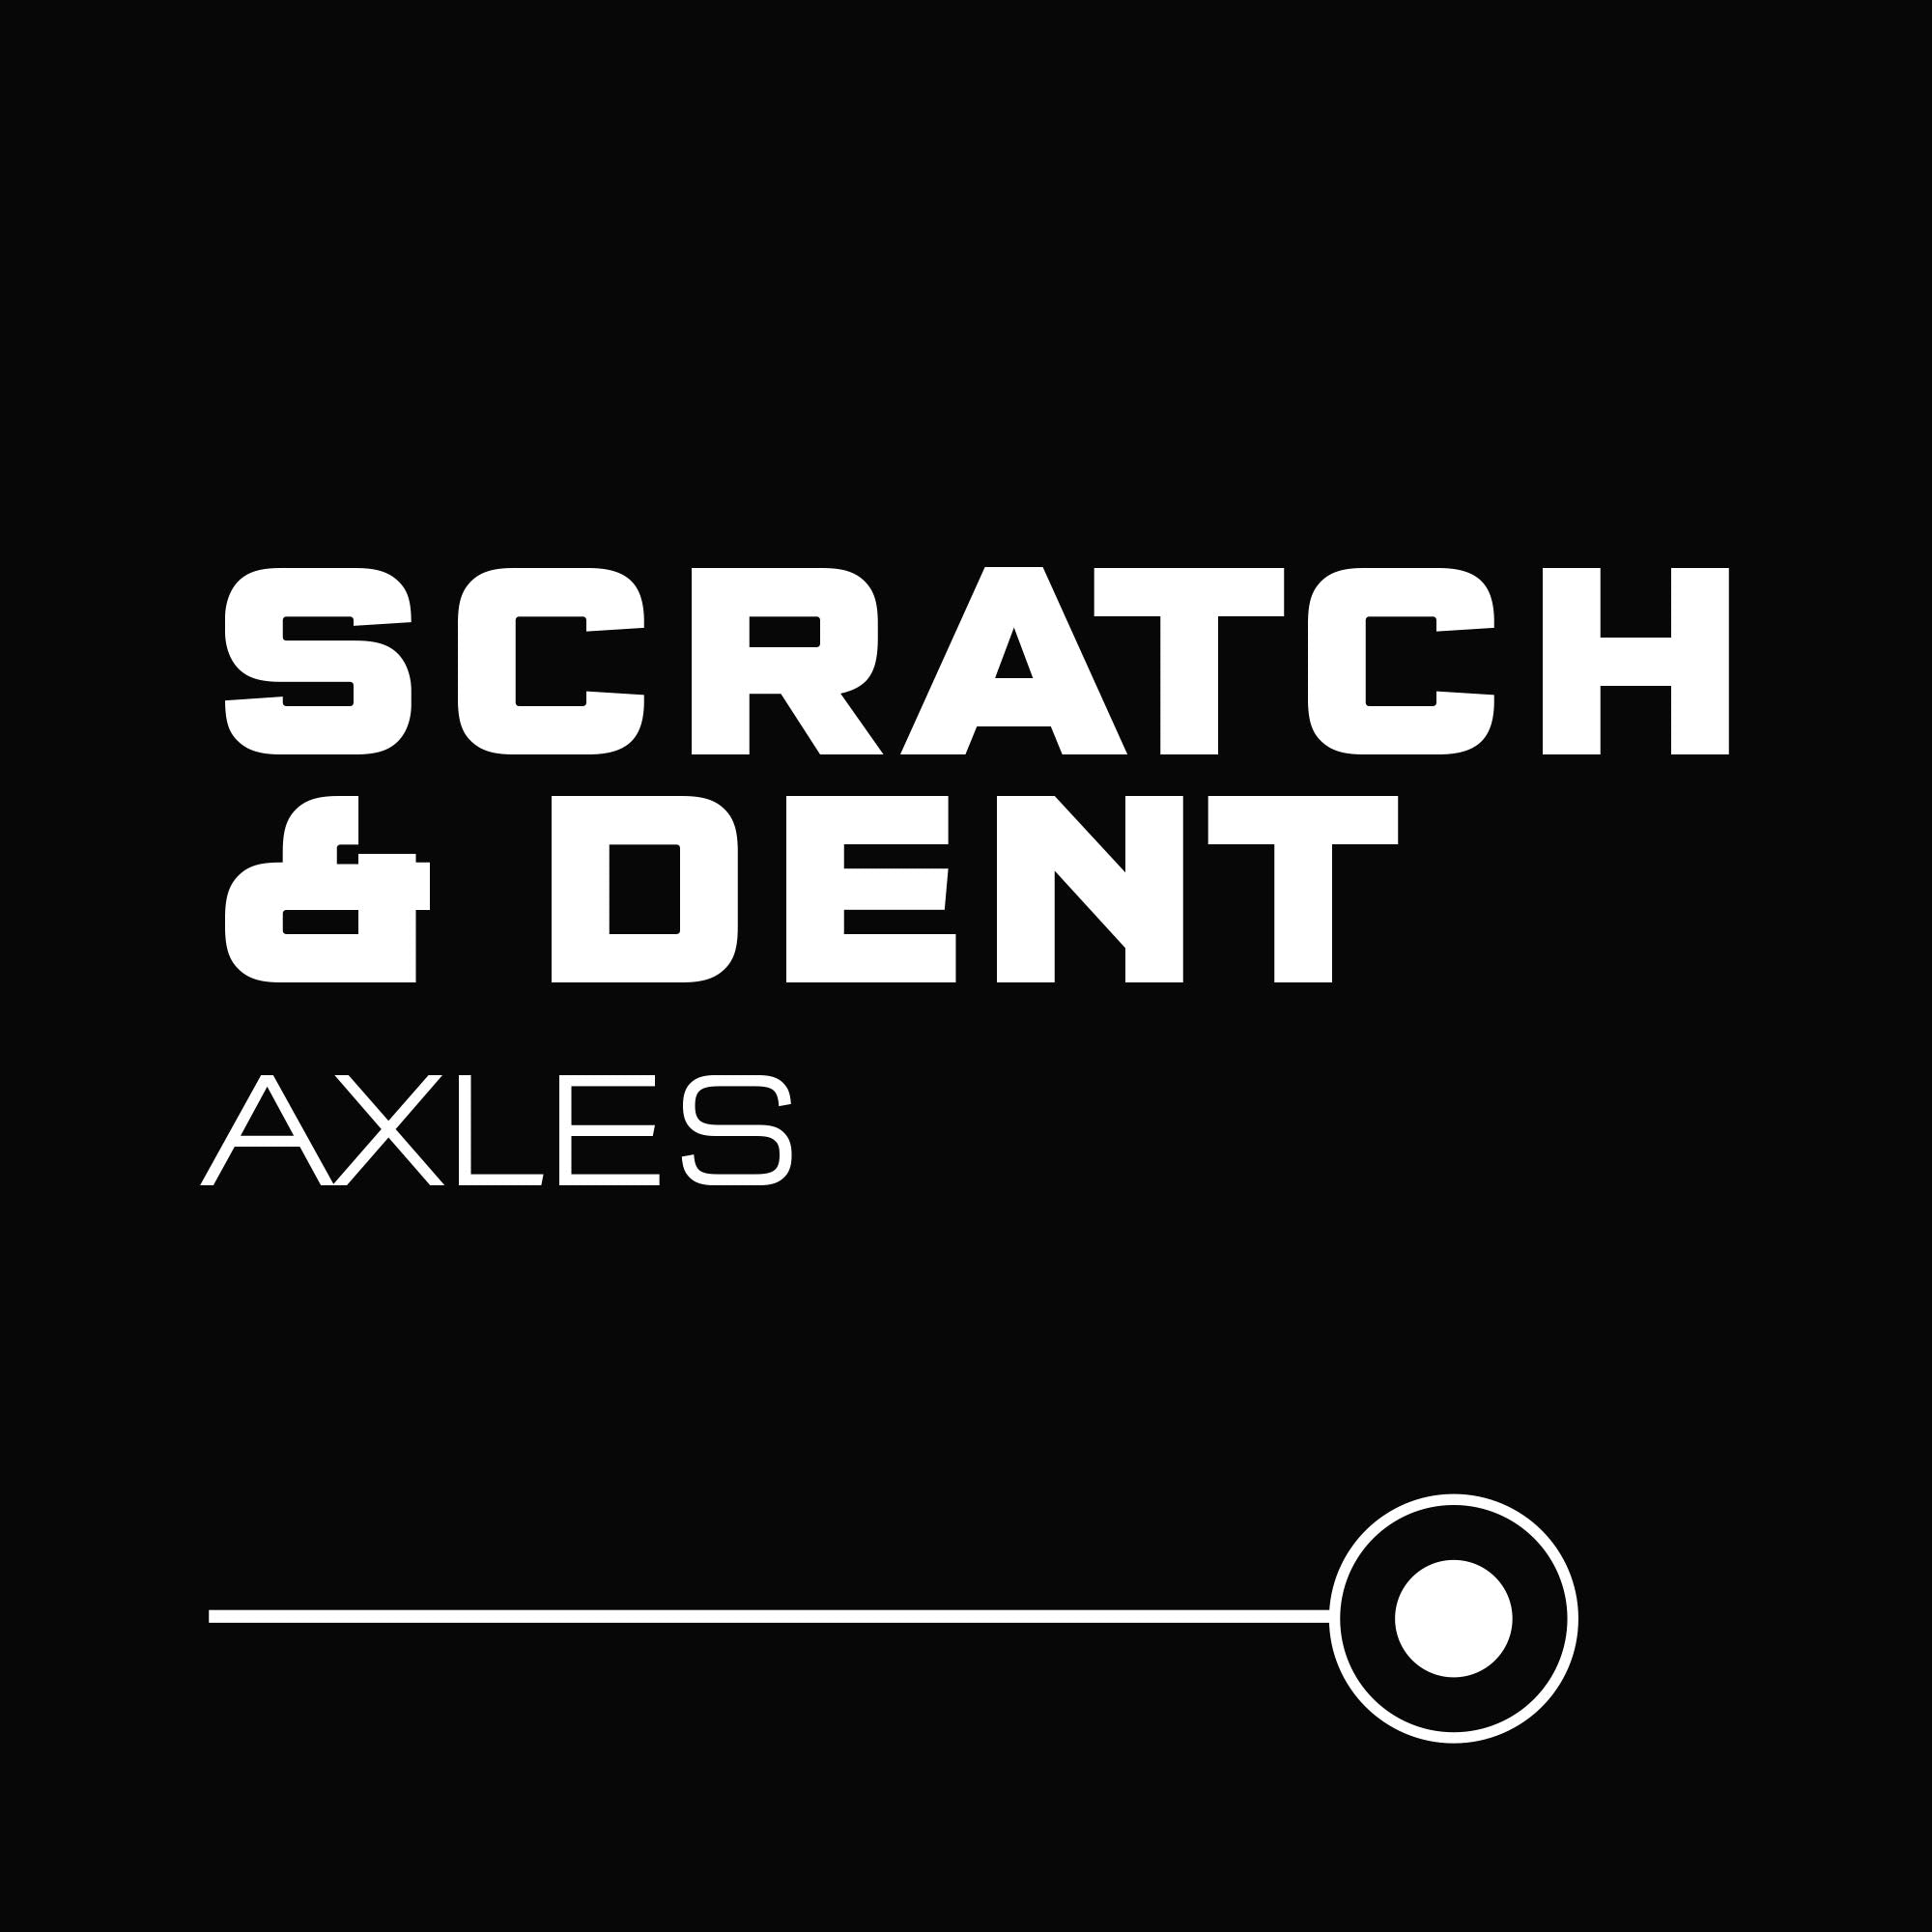 SCRATCH & DENT AXLES